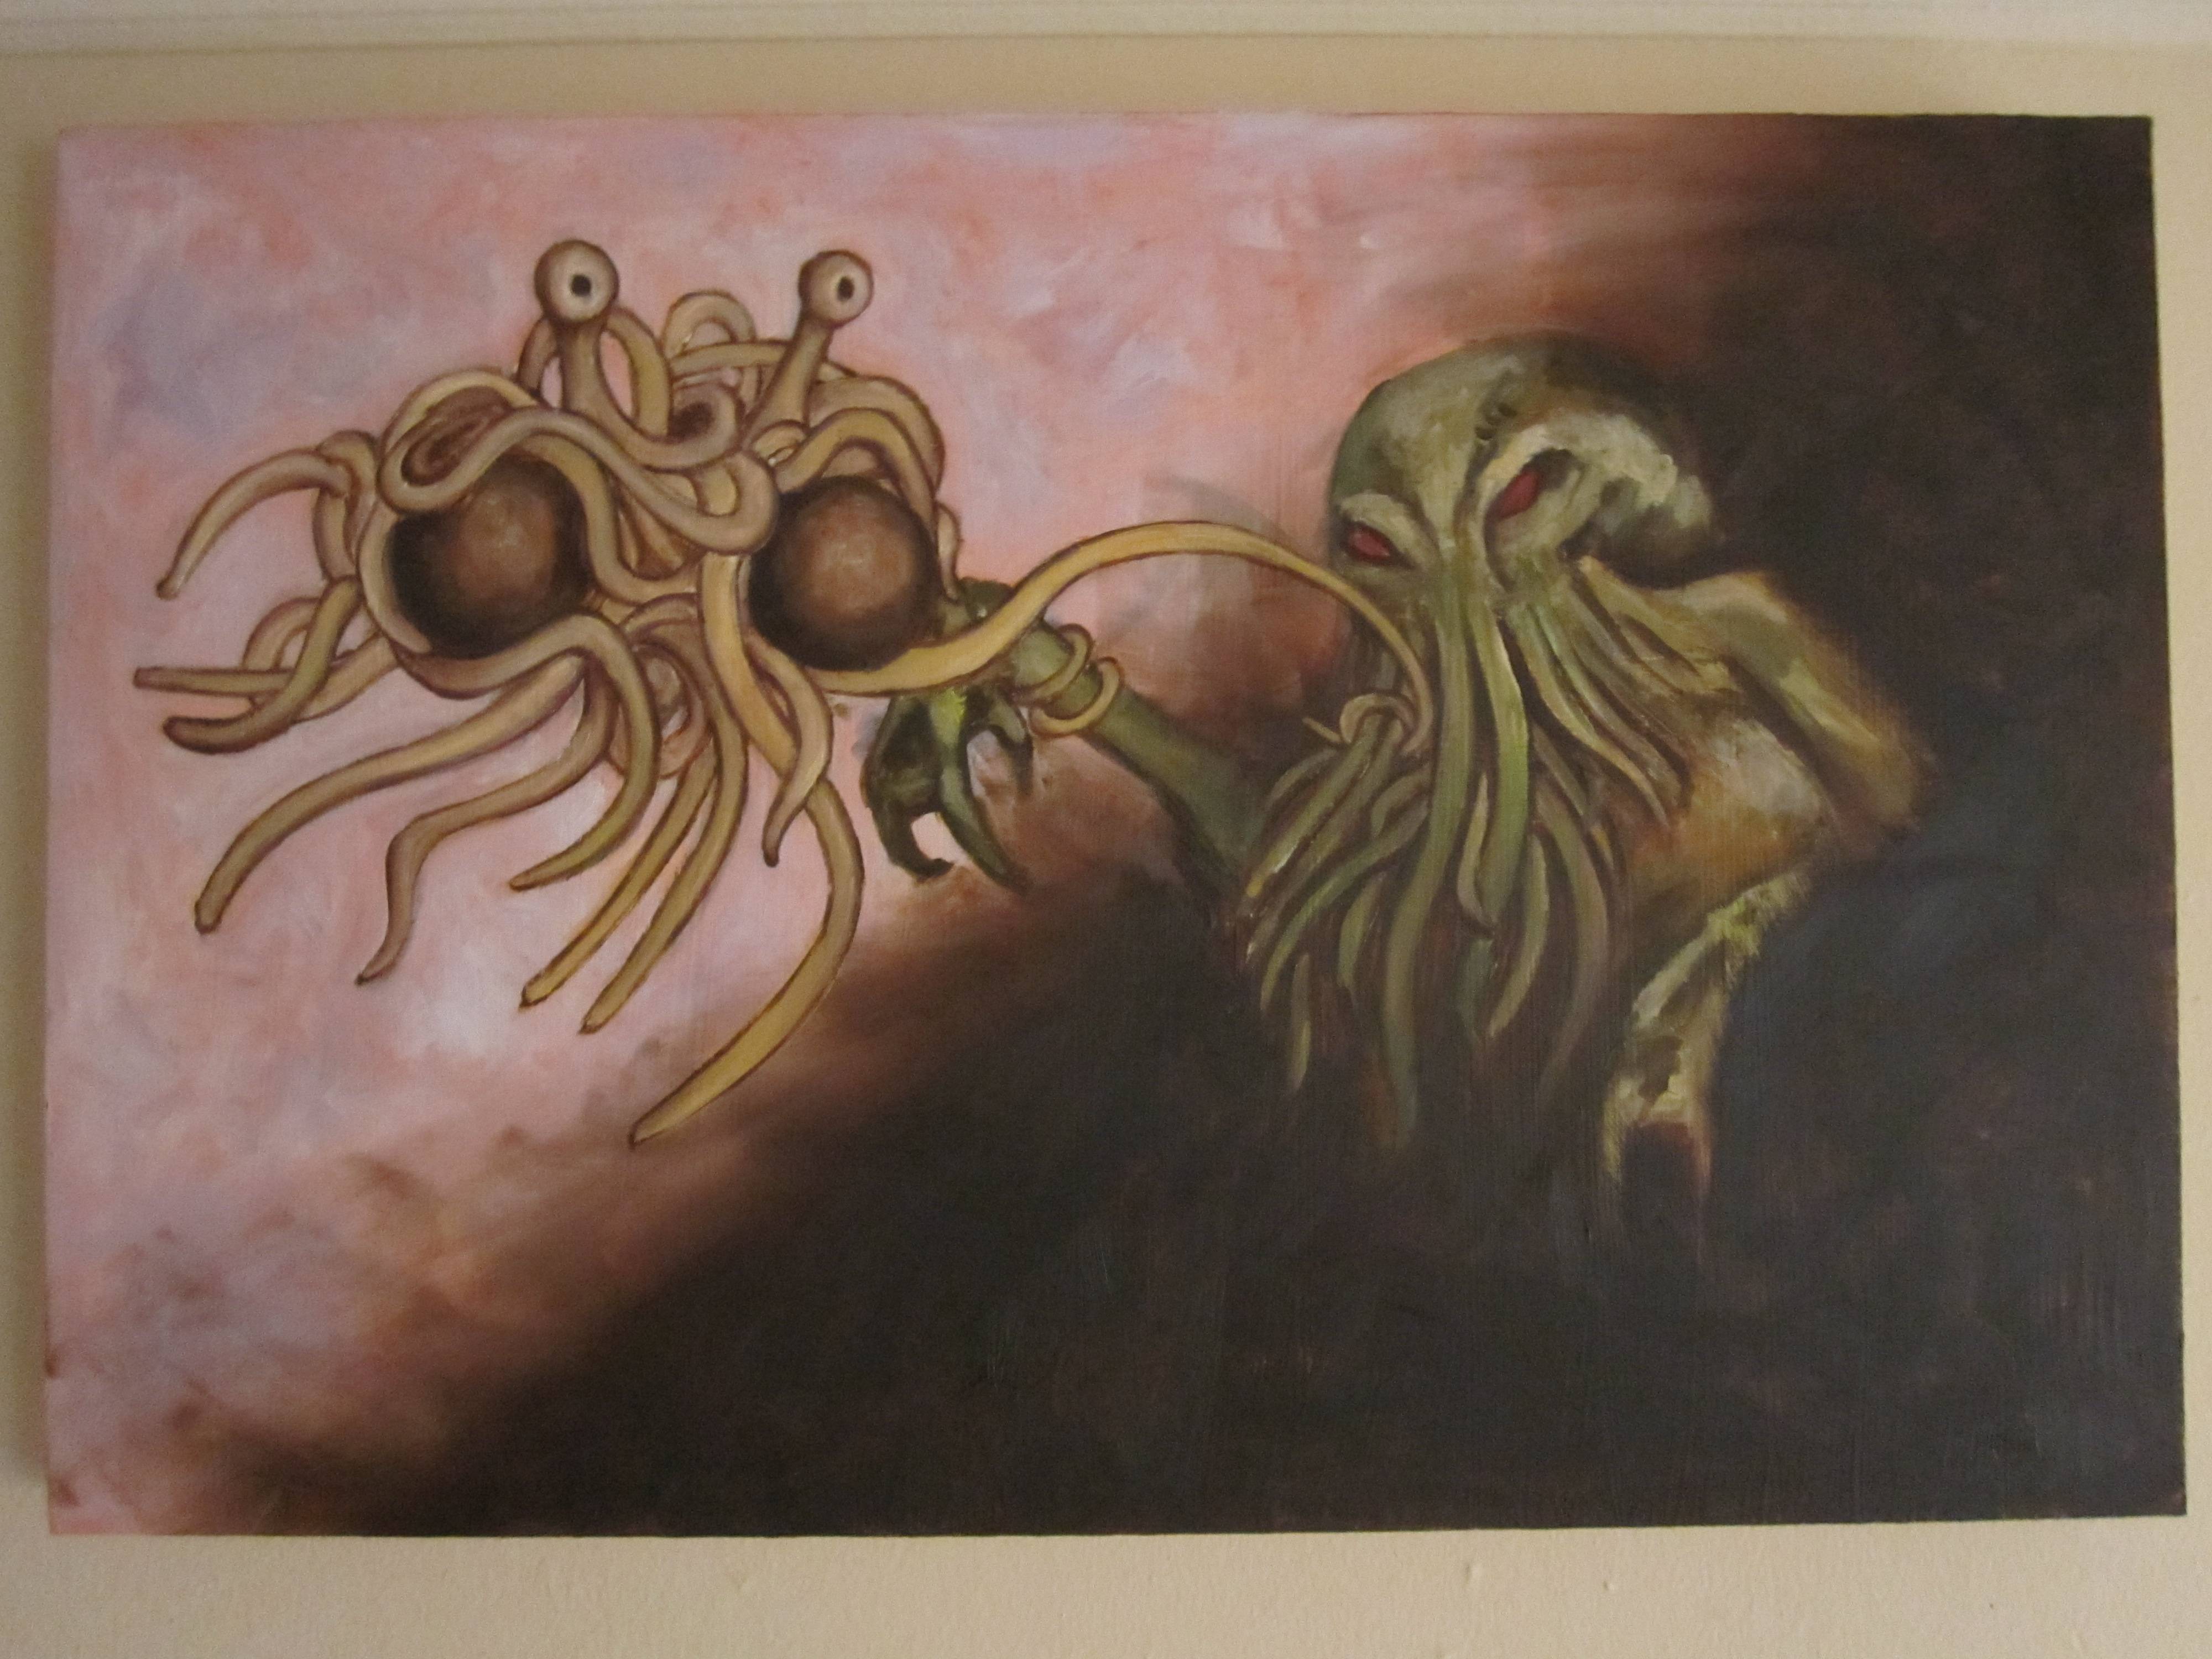 Animals For > Flying Spaghetti Monster Desktop Wallpaper